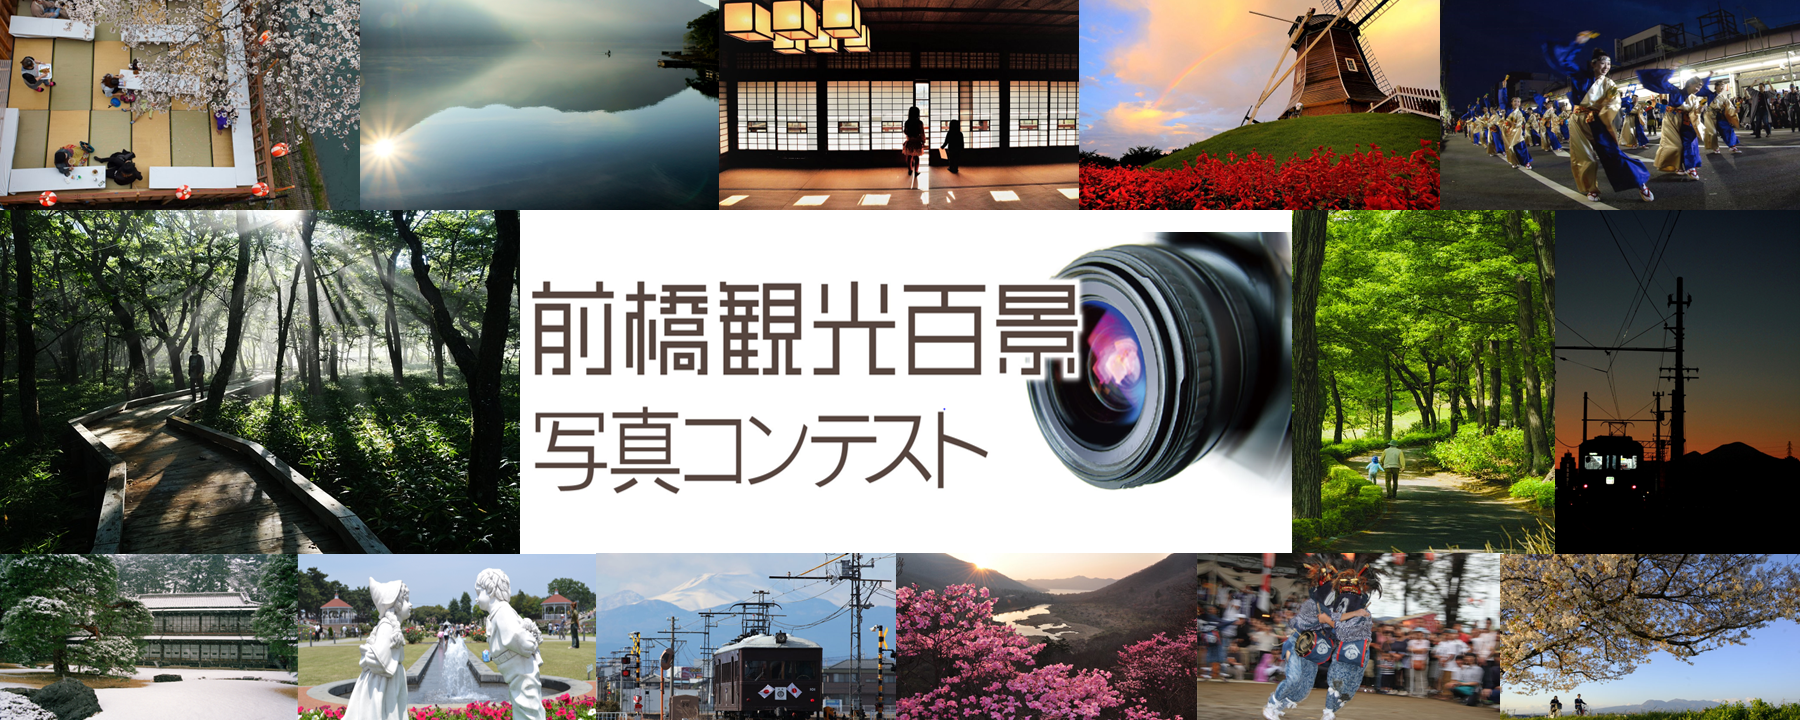 前橋観光百景写真コンテスト